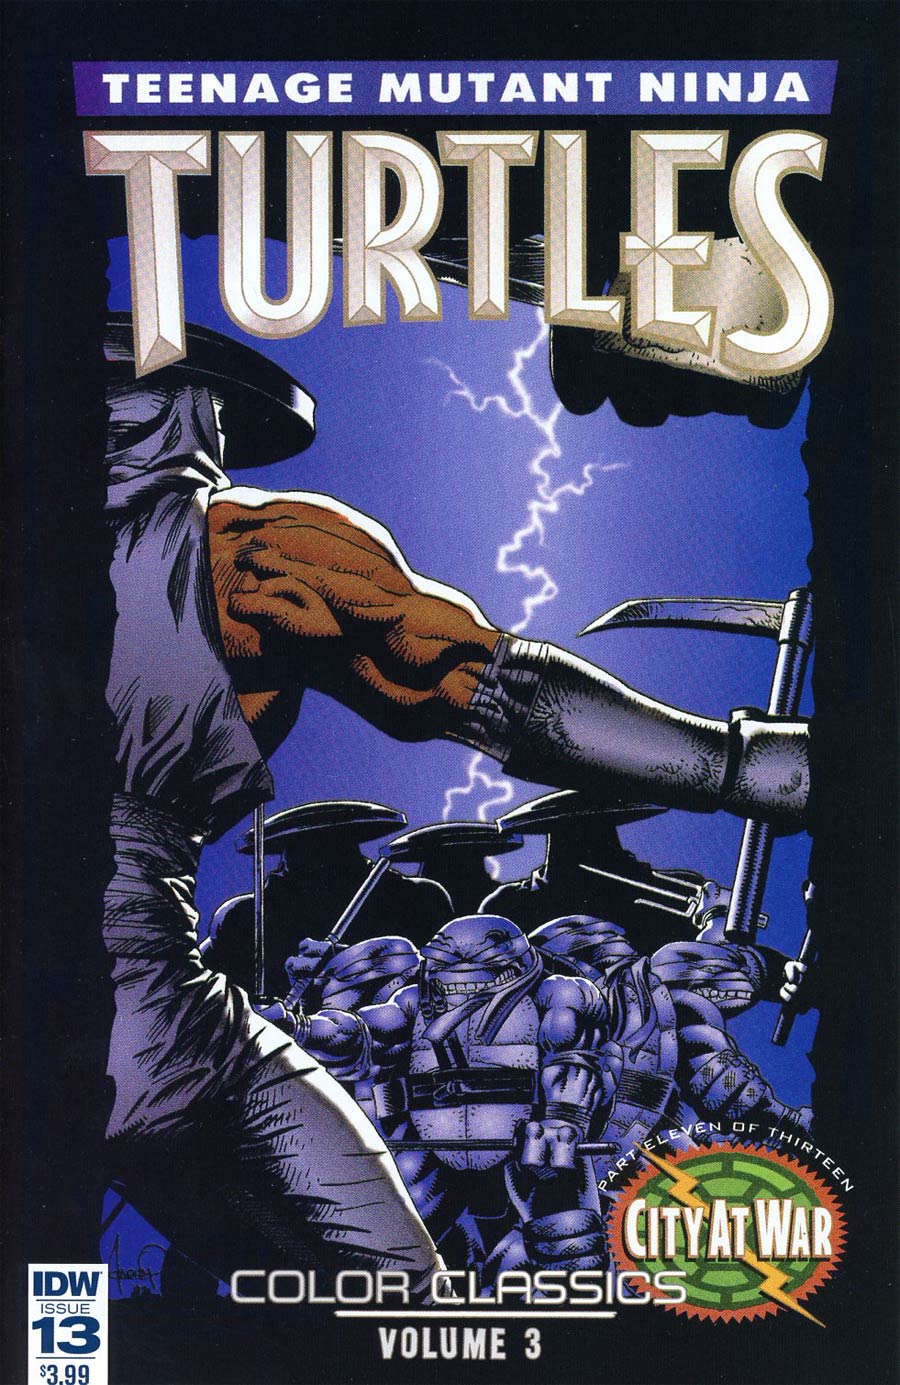 Teenage Mutant Ninja Turtles Color Classics Vol 3 #13